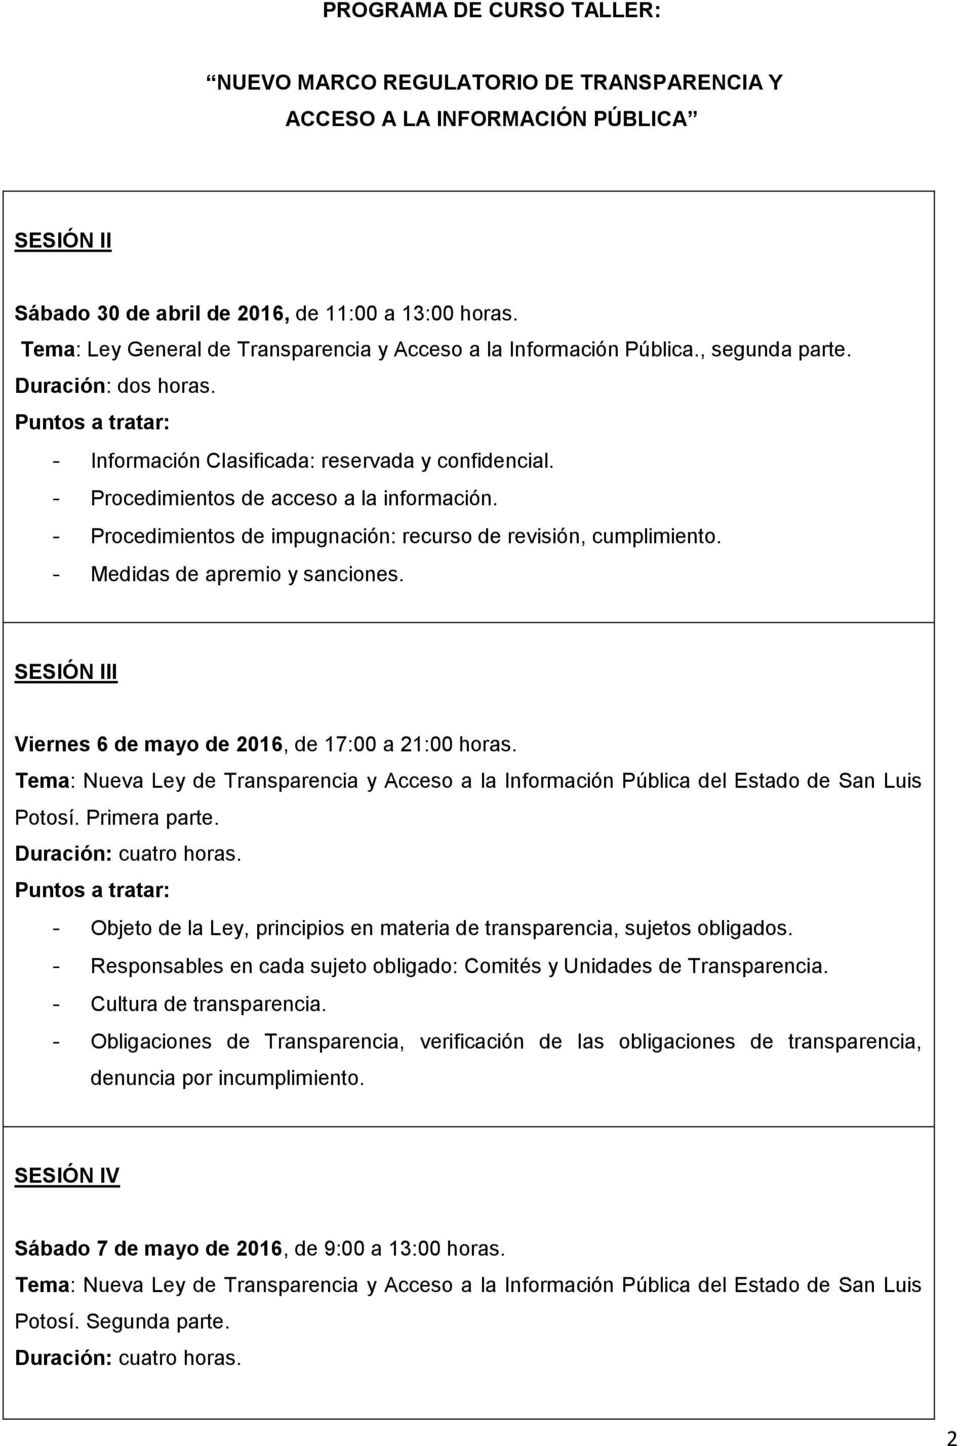 SESIÓN III Viernes 6 de mayo de 2016, de 17:00 a 21:00 horas. Tema: Nueva Ley de Transparencia y Acceso a la Información Pública del Estado de San Luis Potosí. Primera parte.